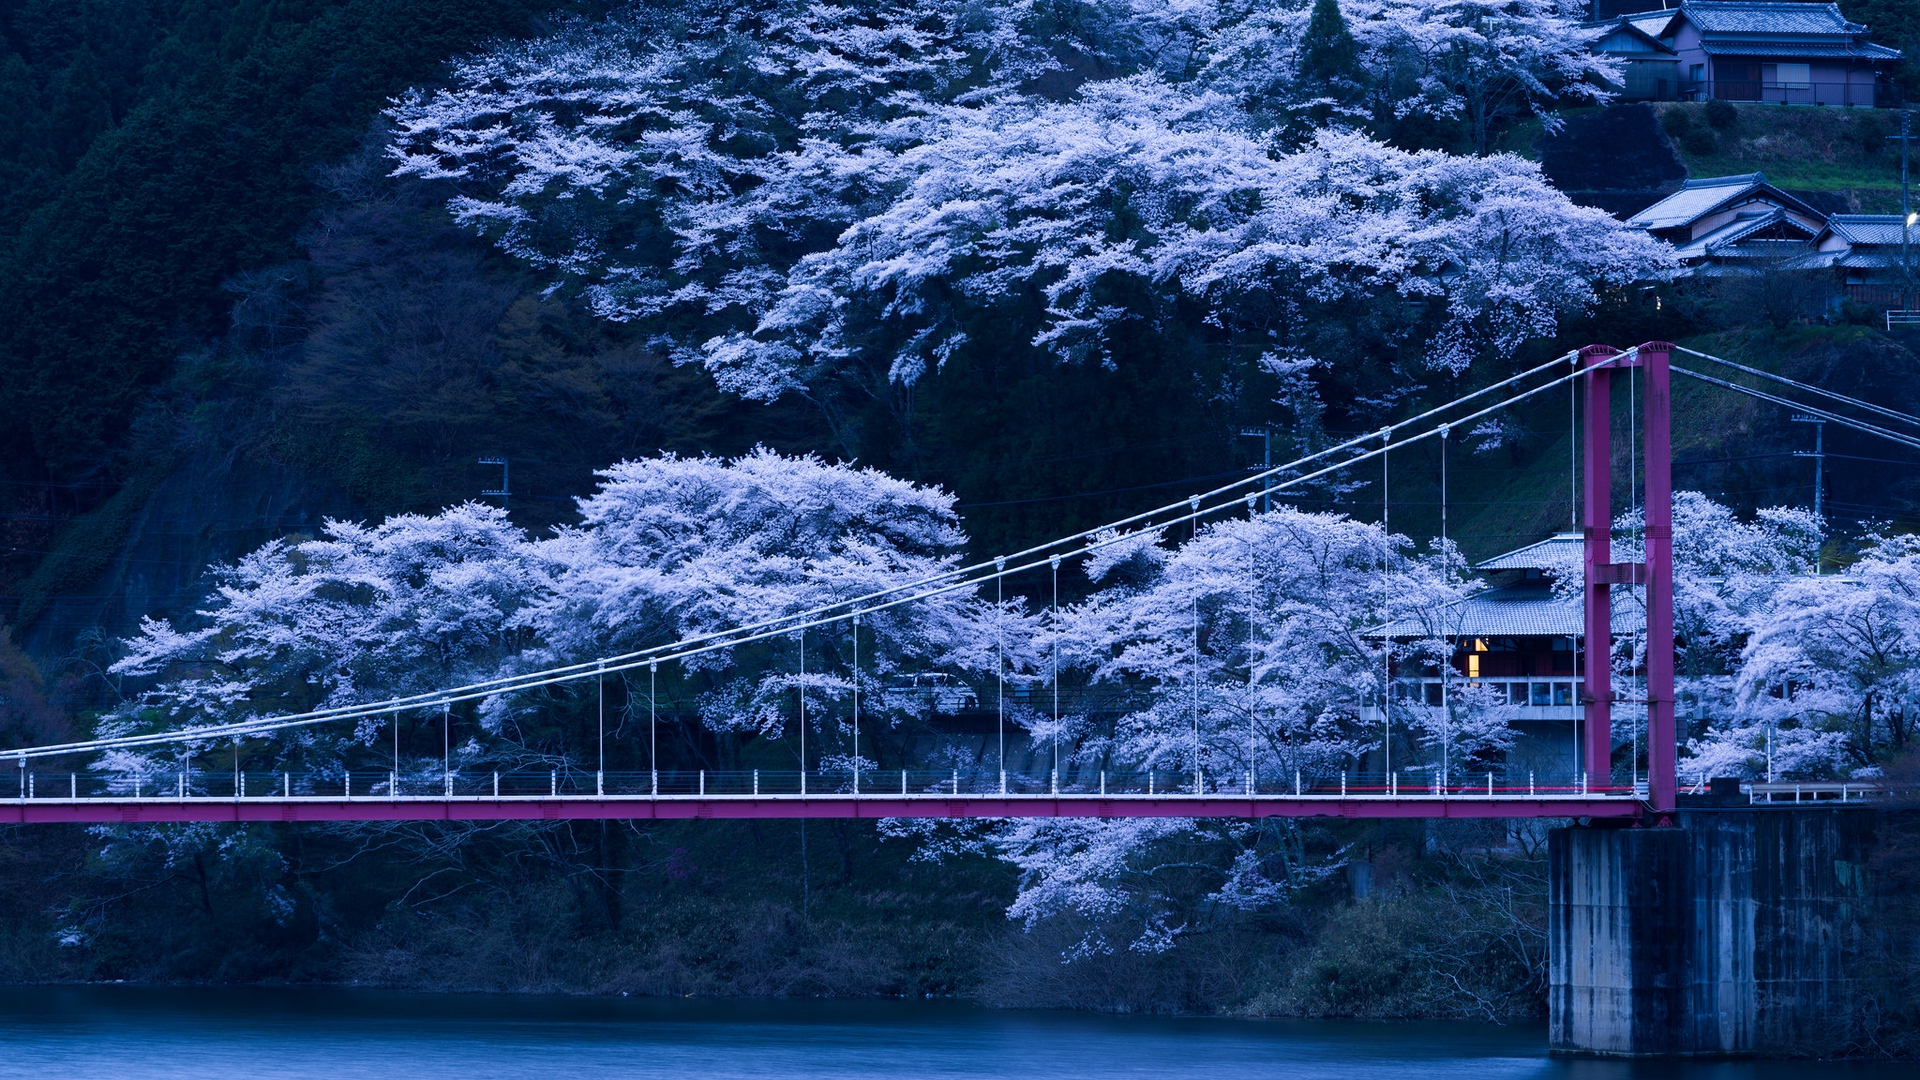 Download wallpaper 1920x1080 japan, bridge, sakura, night full HD